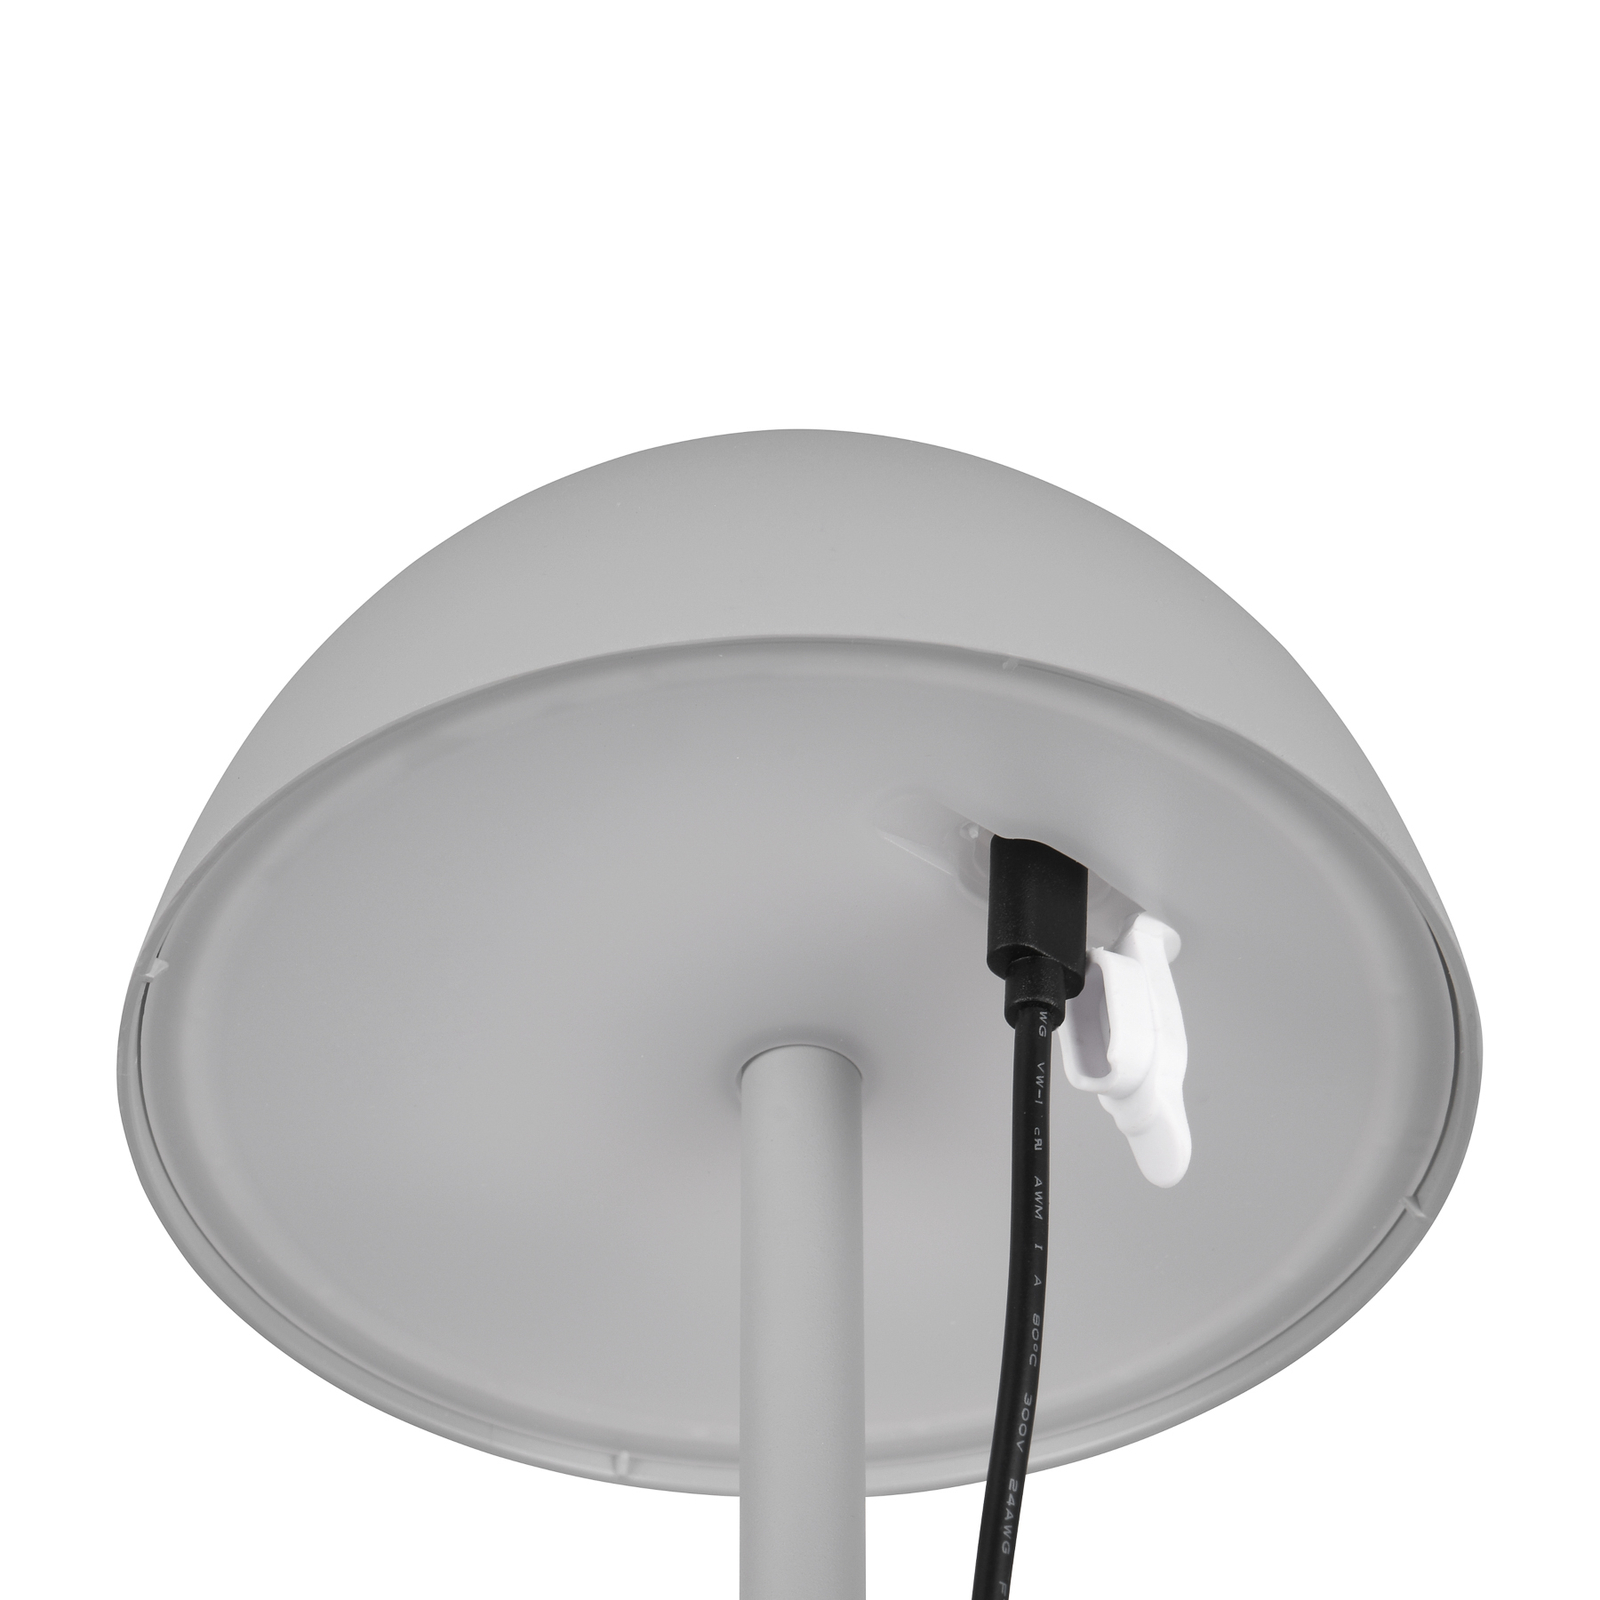 Ricardo LED tafellamp, grijs, hoogte 30 cm, kunststof